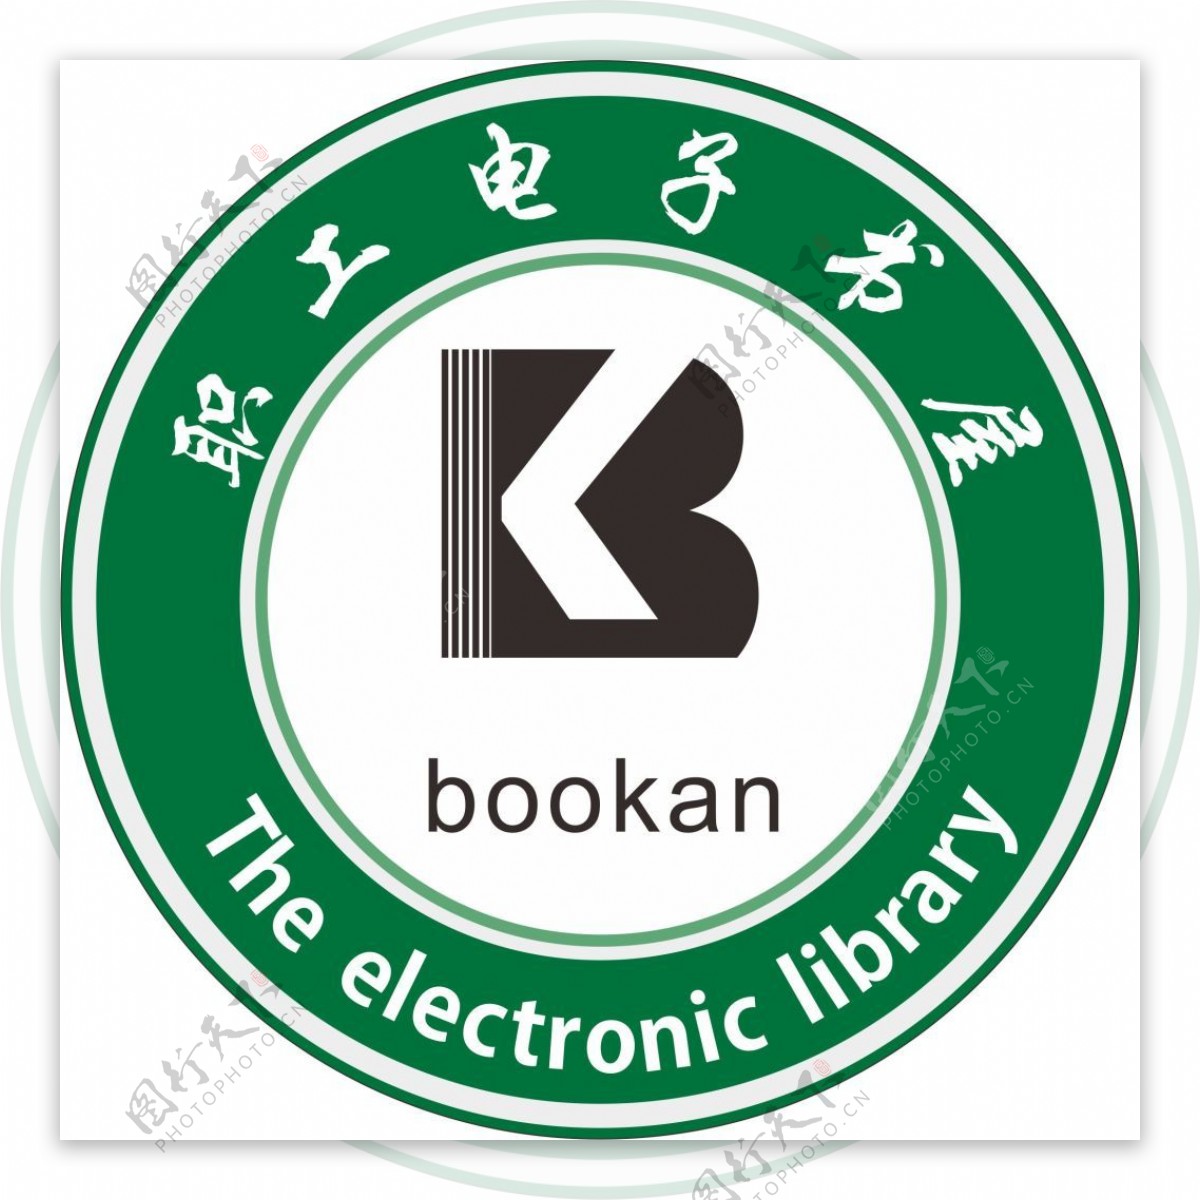 博看网职工电子书屋logo设计图